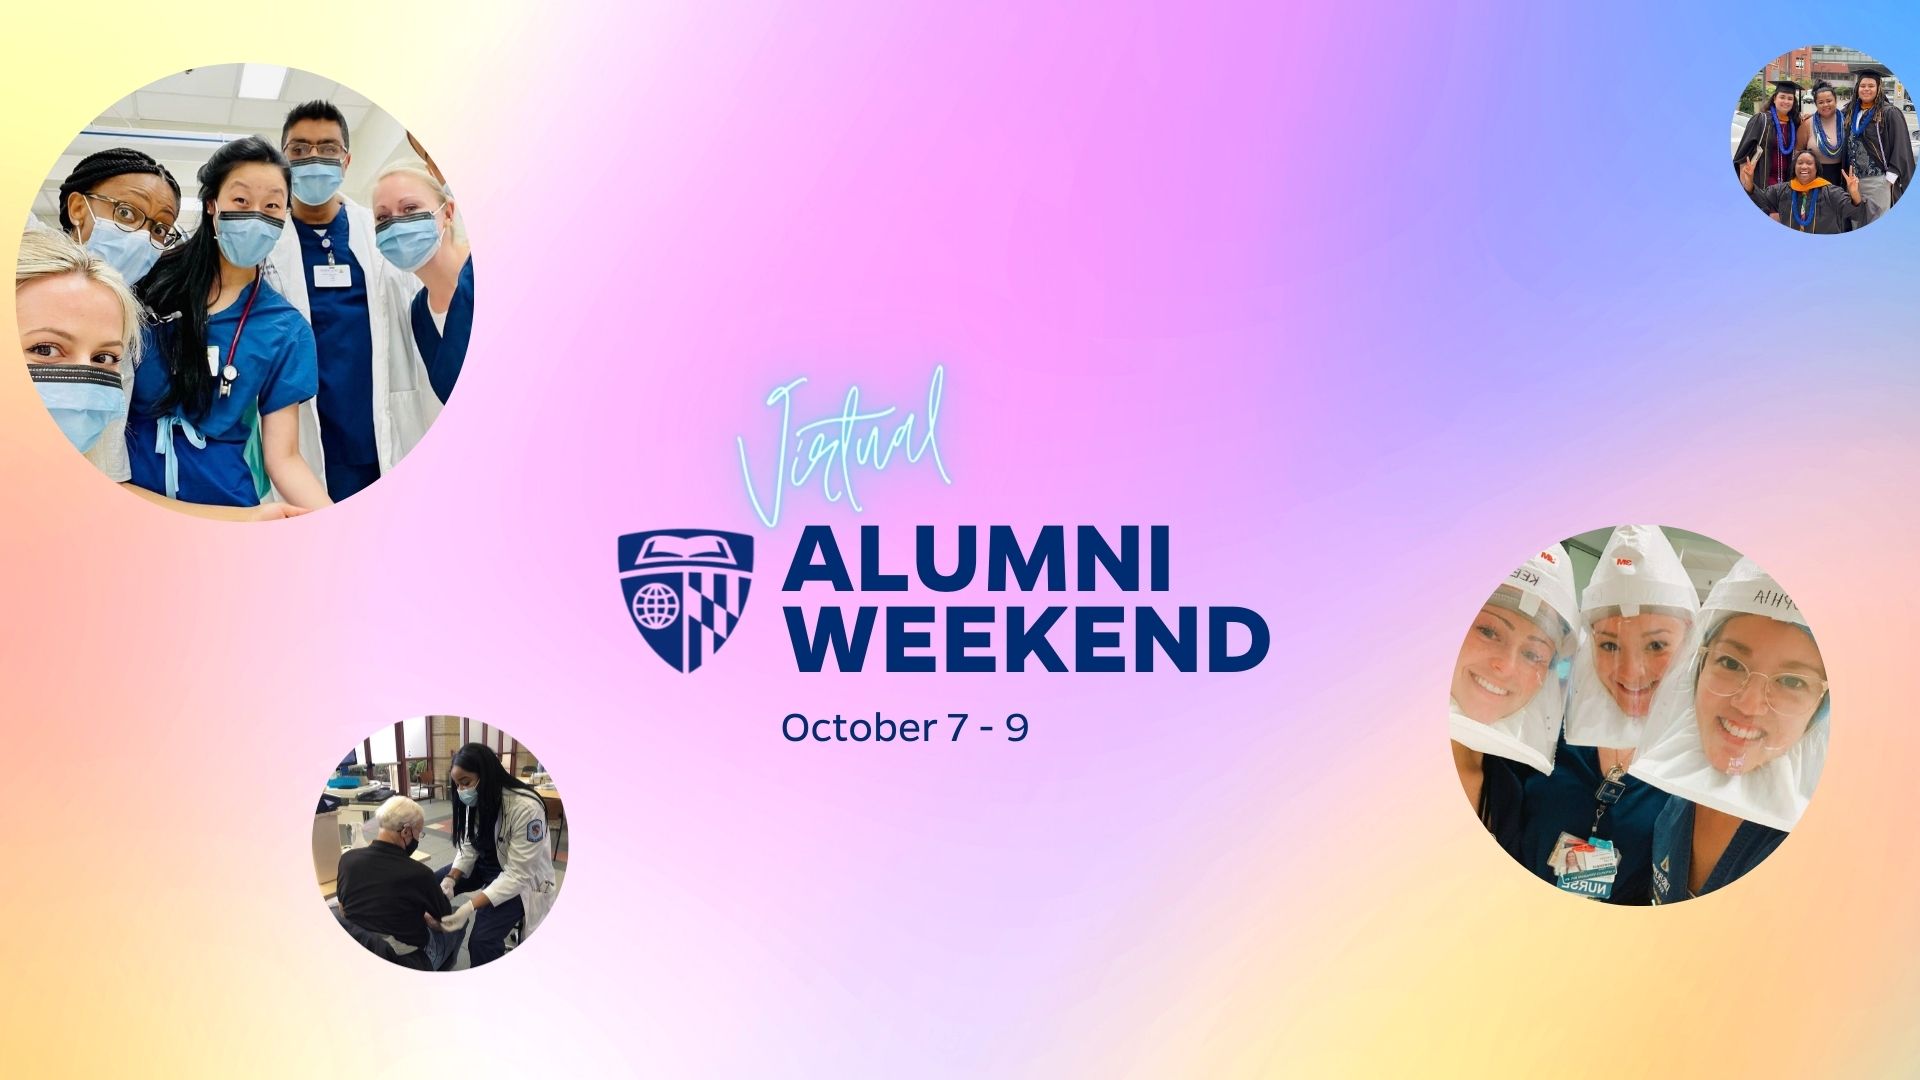 Virtual Alumni Weekend Is Here